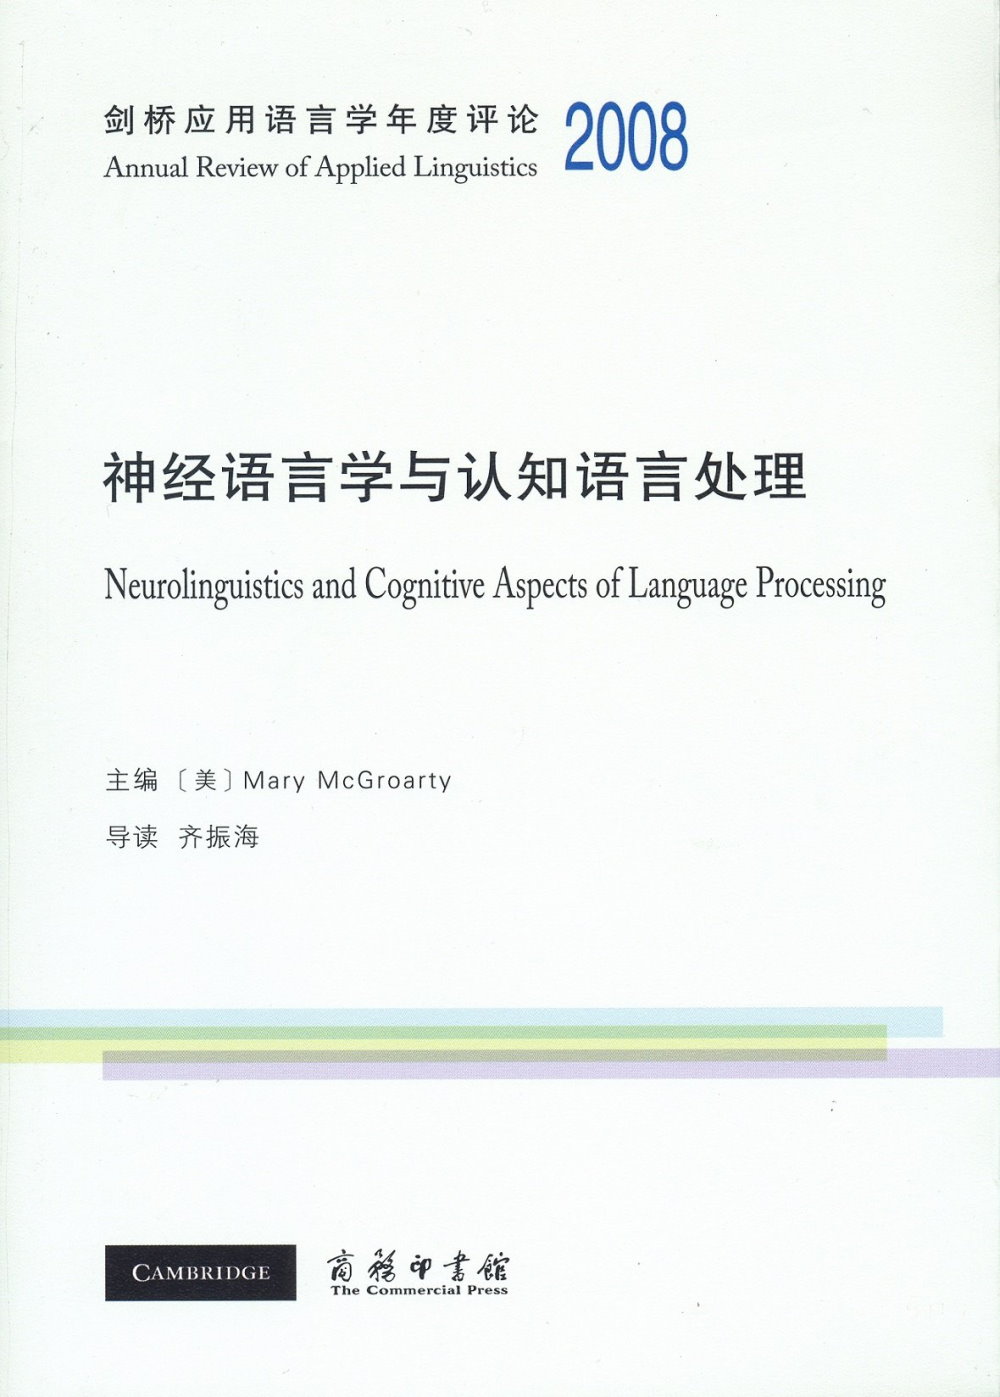 劍橋應用語言學年度評論2008·神經語言學與認知語言處理